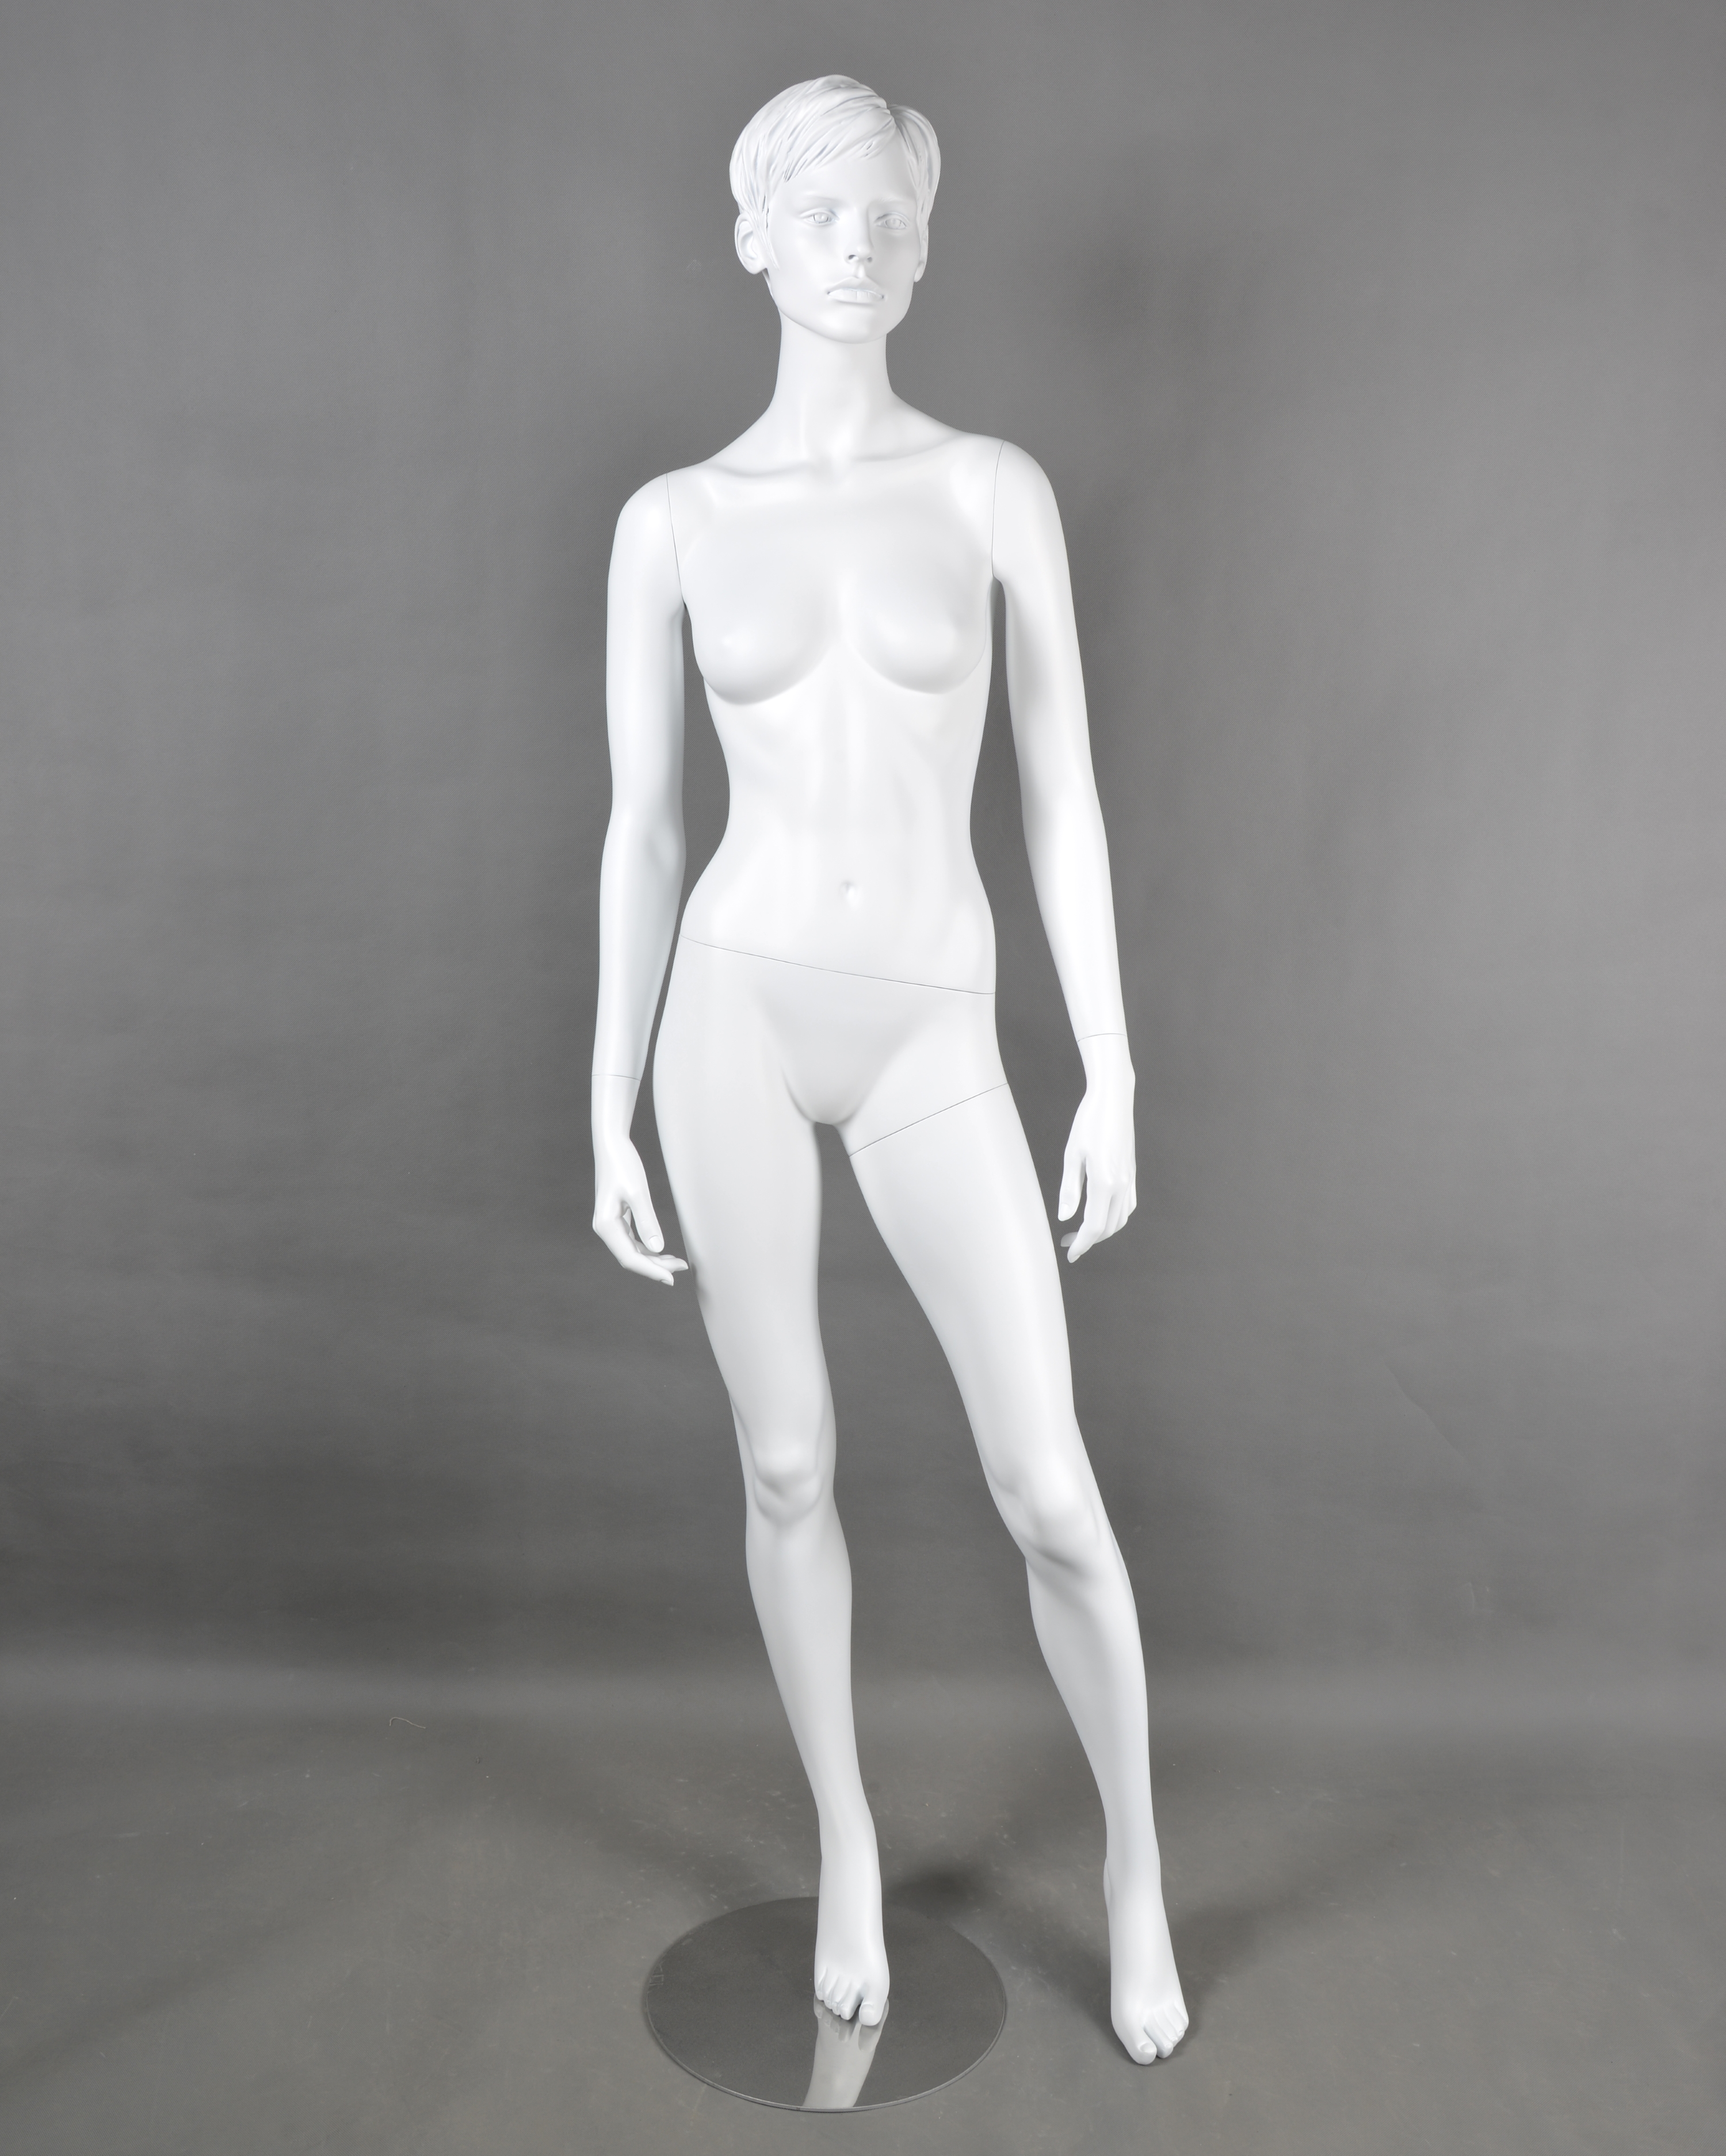 Schaufensterfigur MOS Dame, Konfektionsgröße 36, weiß, mit modelliertem Haar, aus Fiberglas, inkl. Standplatte verchromt